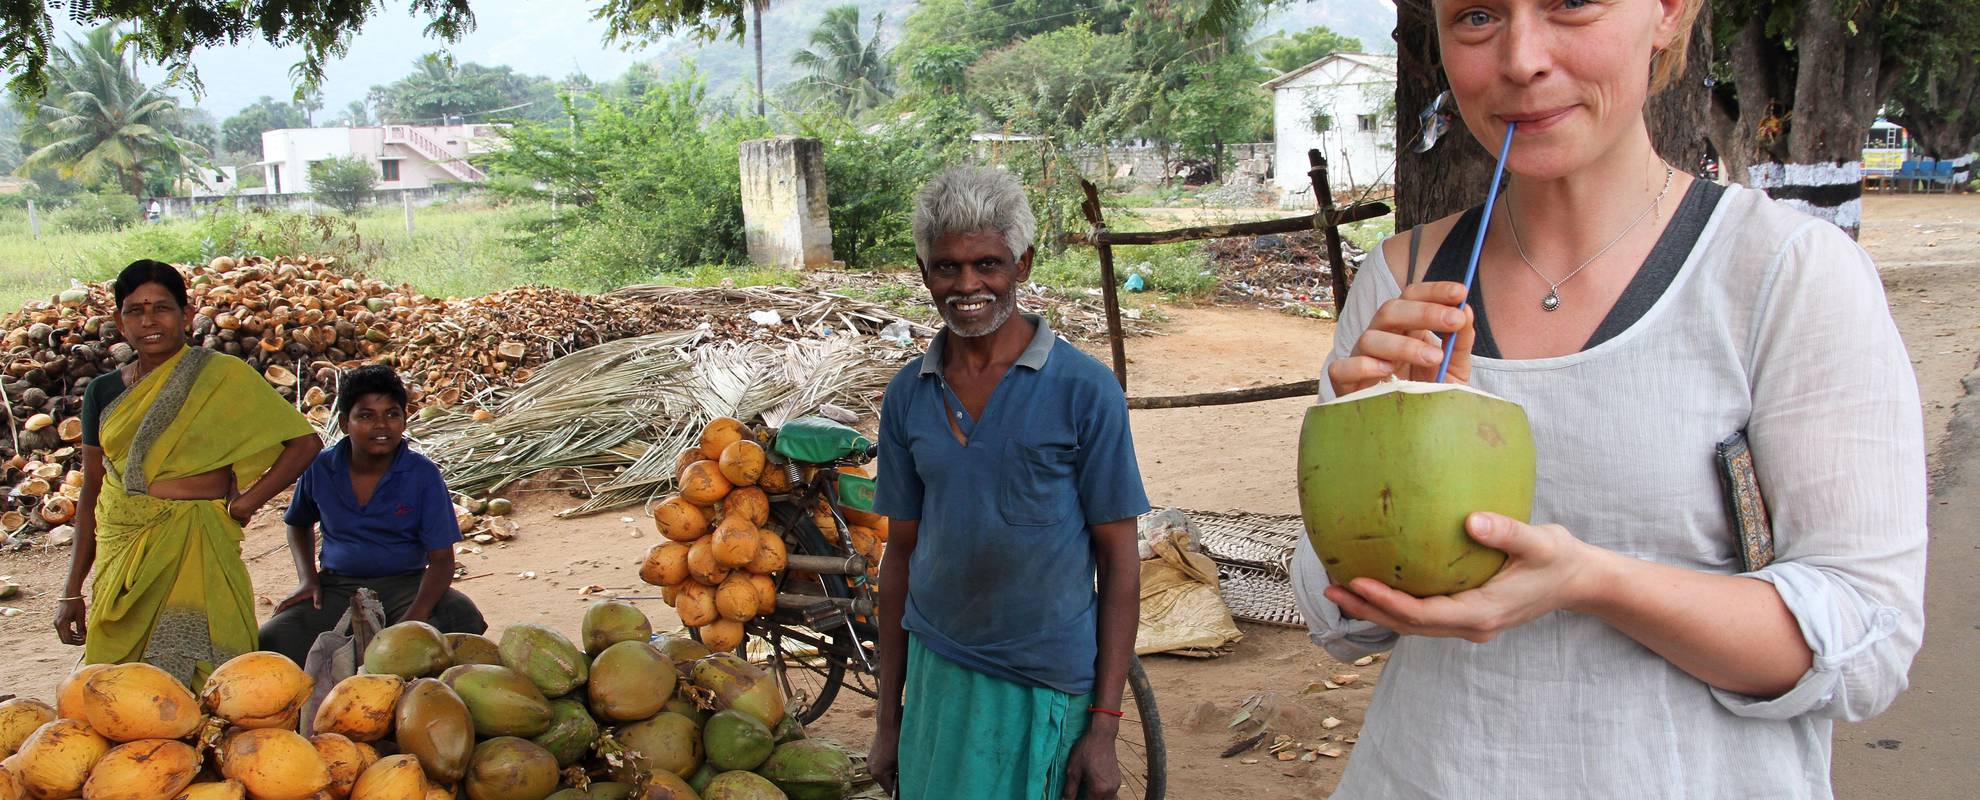 Södra Indien är känt för sin kokos - i alla former